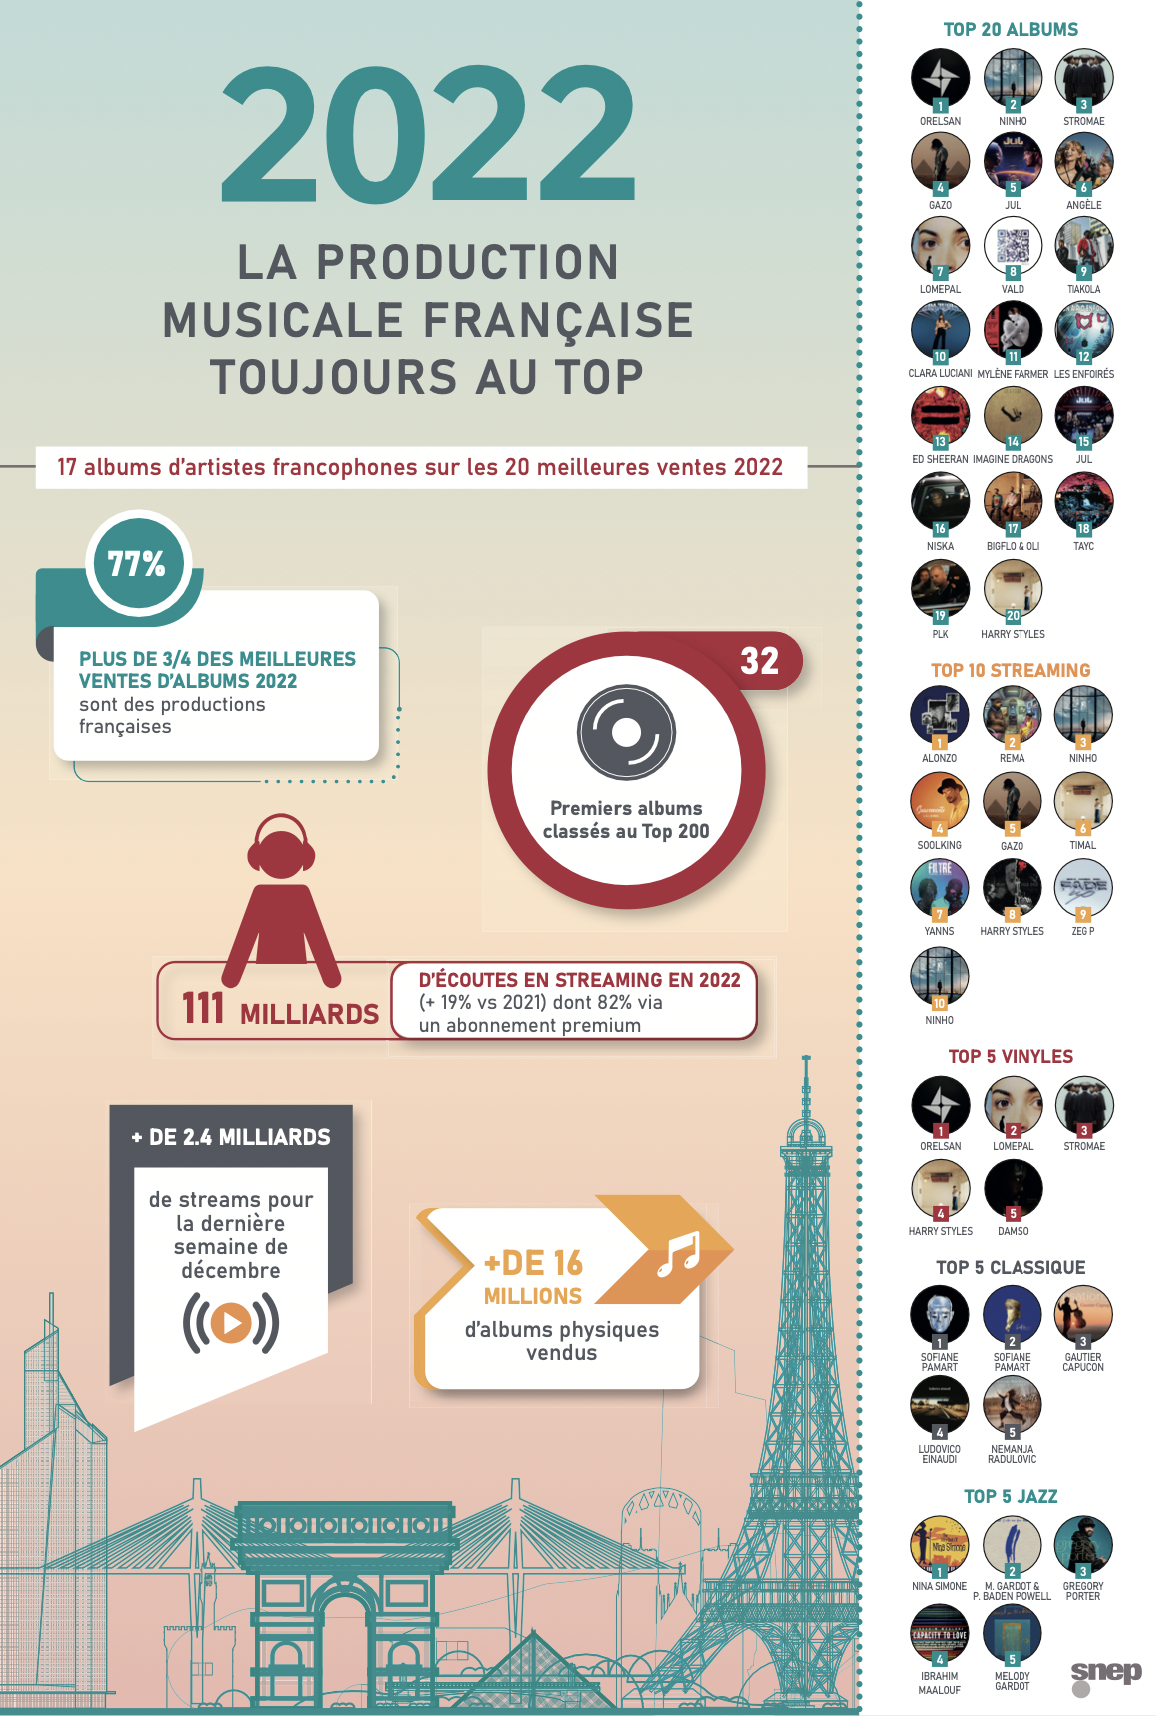 La production musicale française "toujours au top"